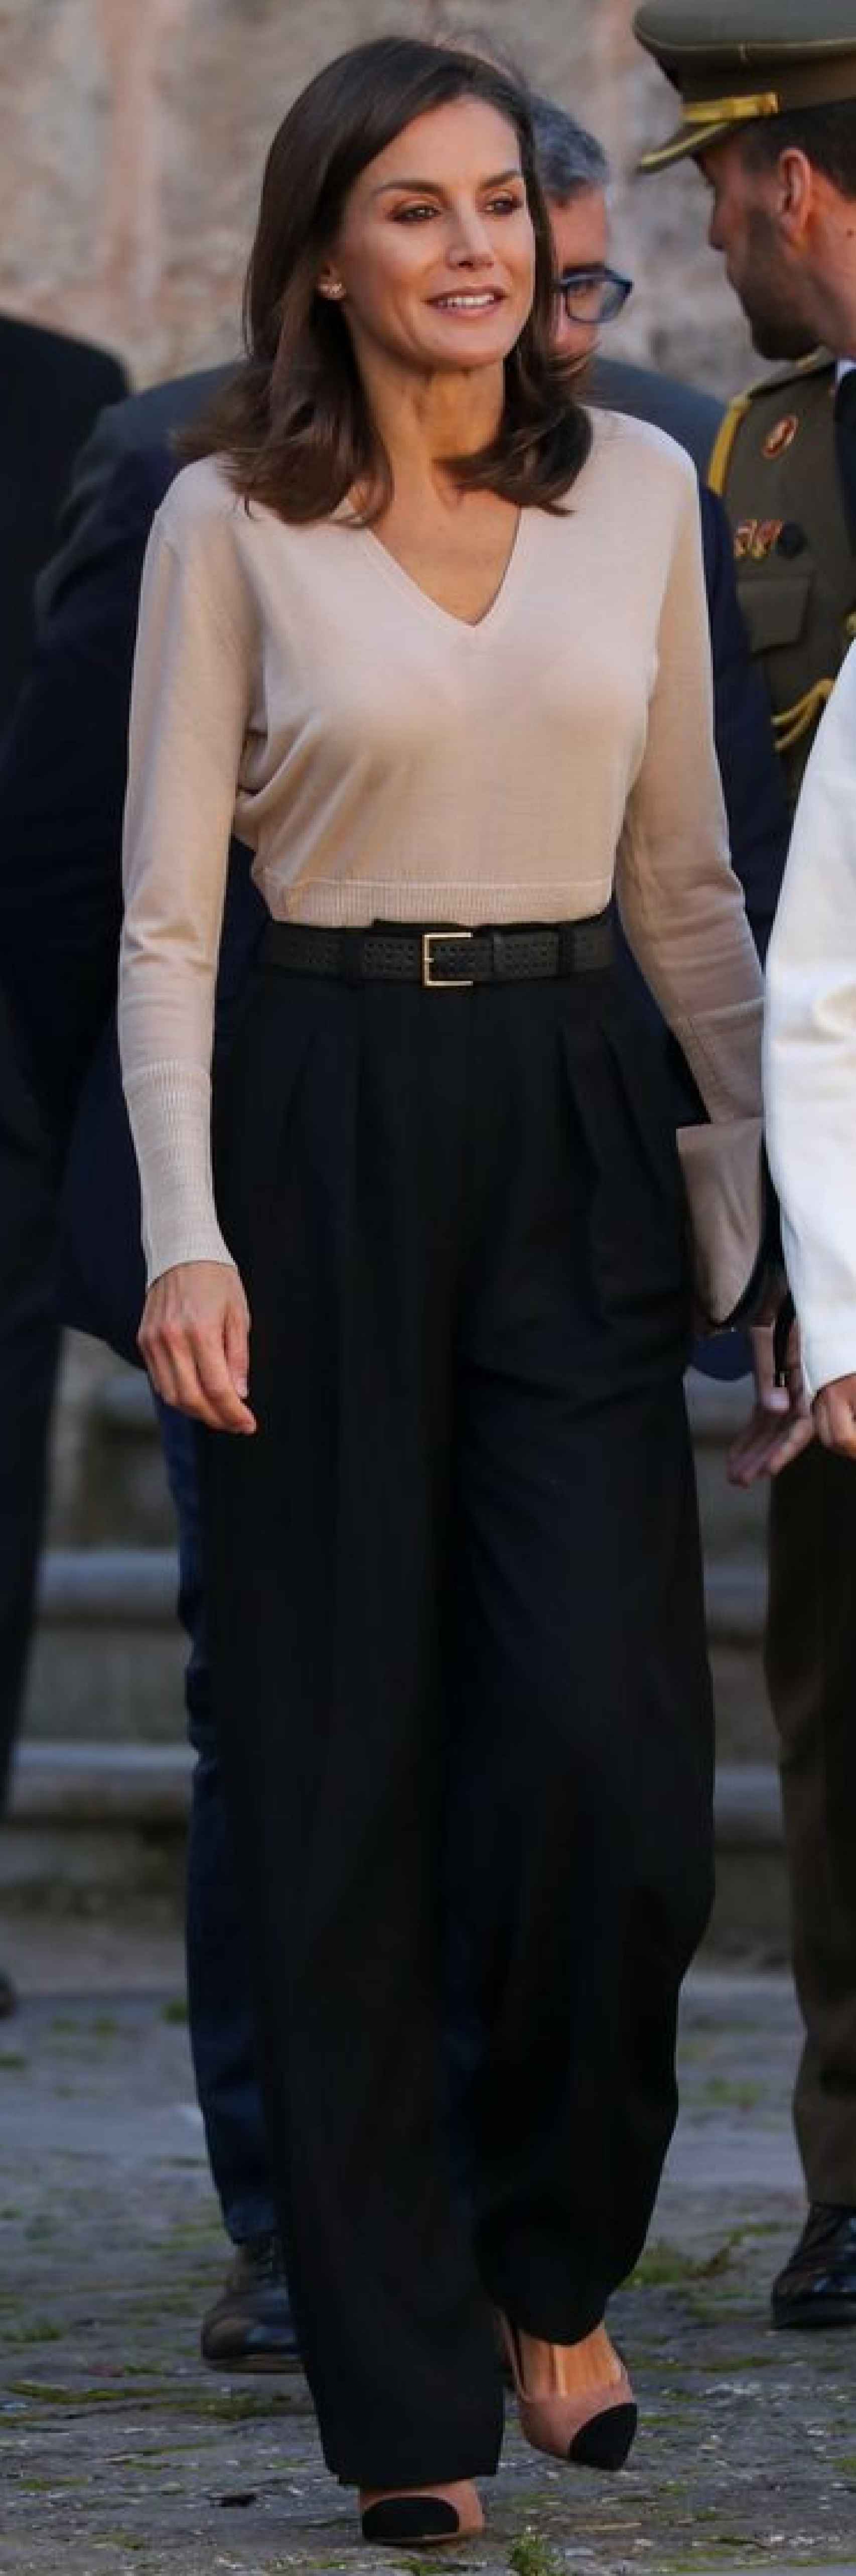 La reina Letizia con un jersey con escote en V.